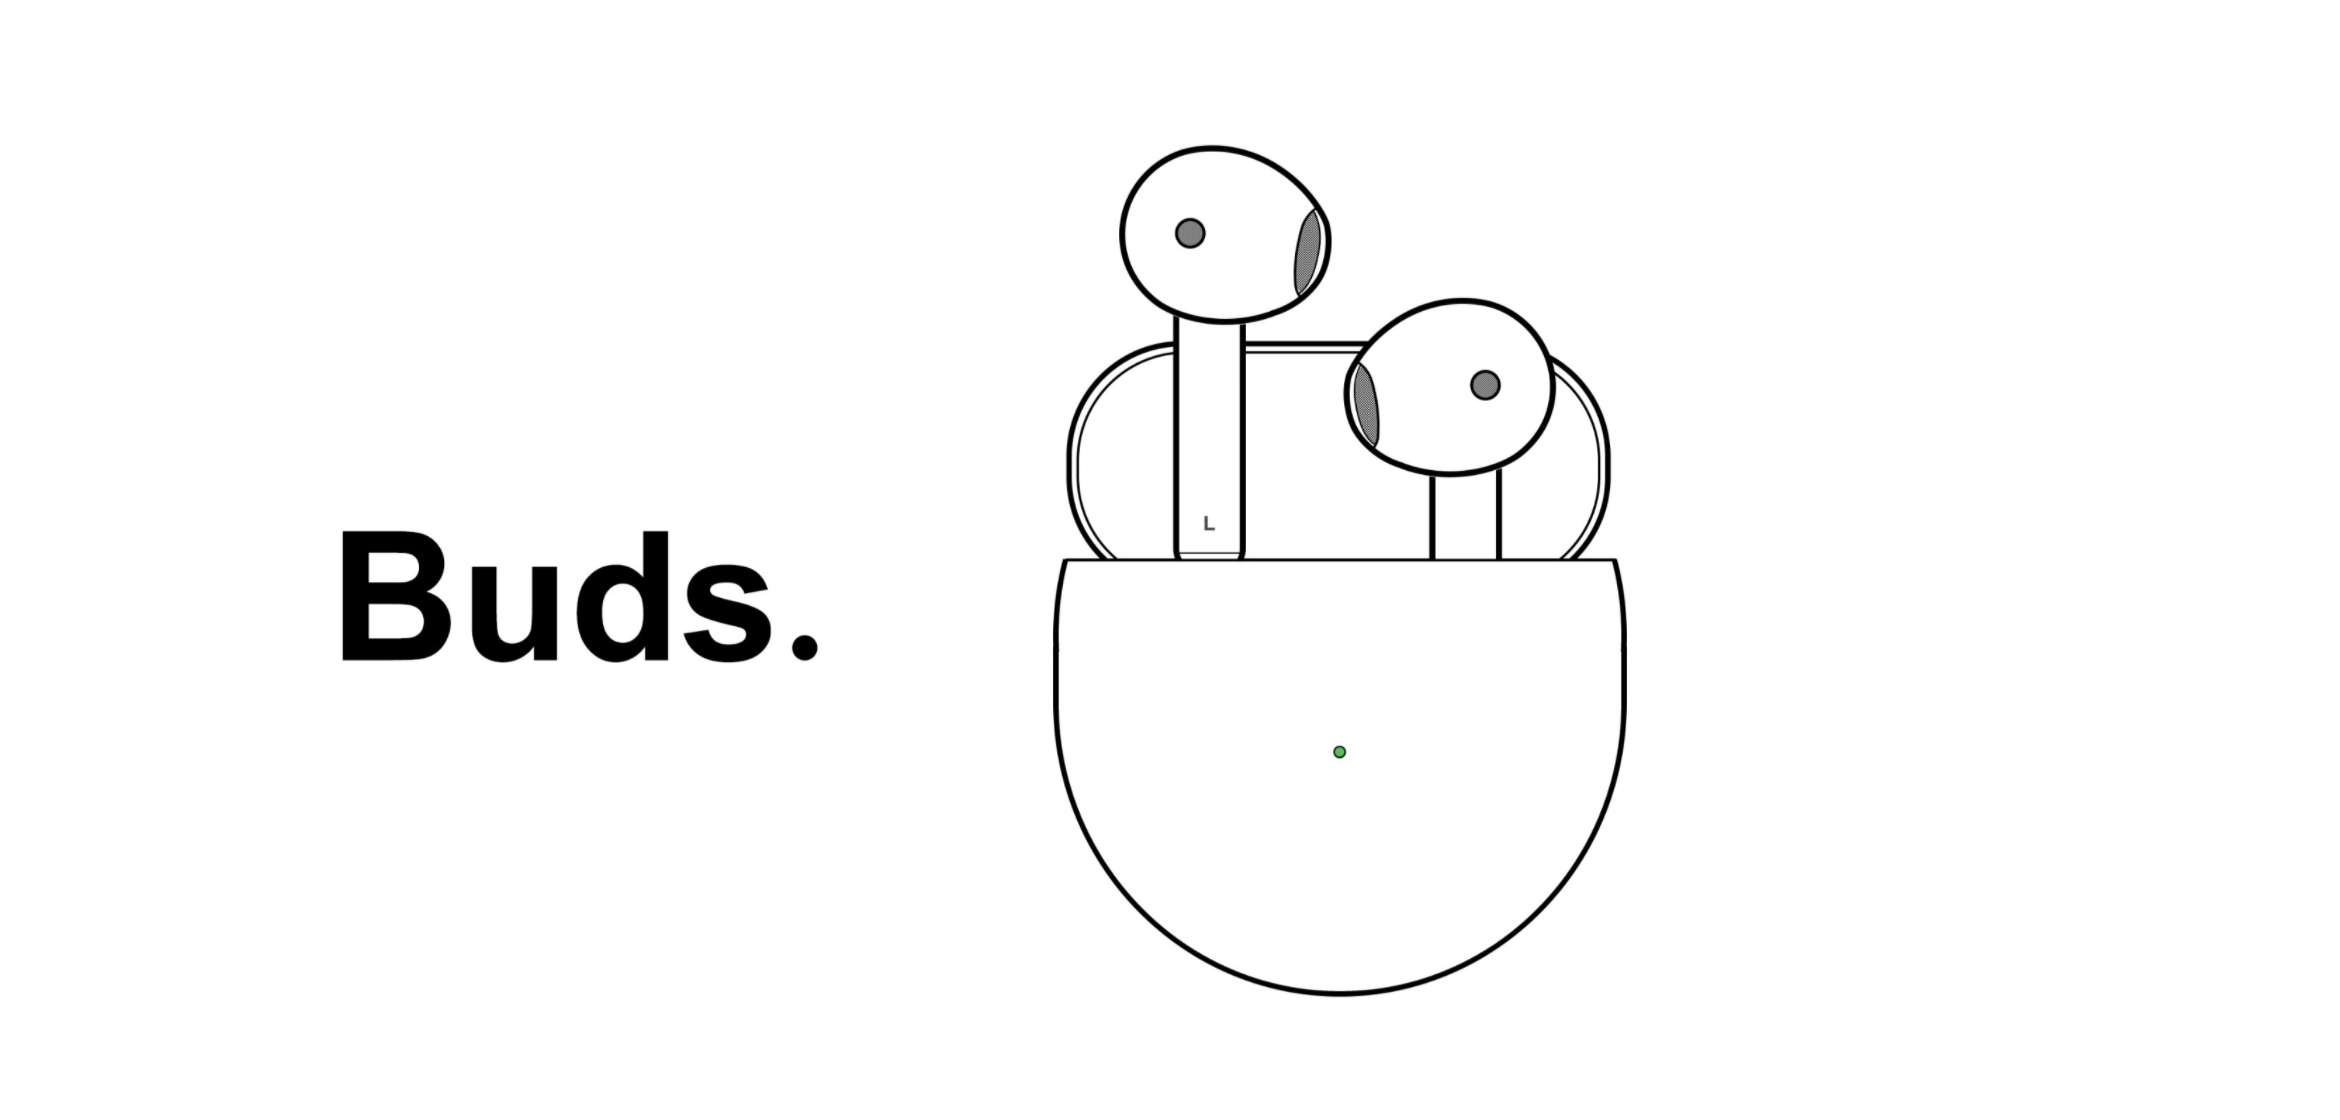 ওয়ানপ্লাস টিডব্লিউএস ইয়ারবডে কাজ করতে পারে: টুইটগুলি এইগুলিকে 'কুঁড়ি' বলা হবে বলে পরামর্শ দেয়